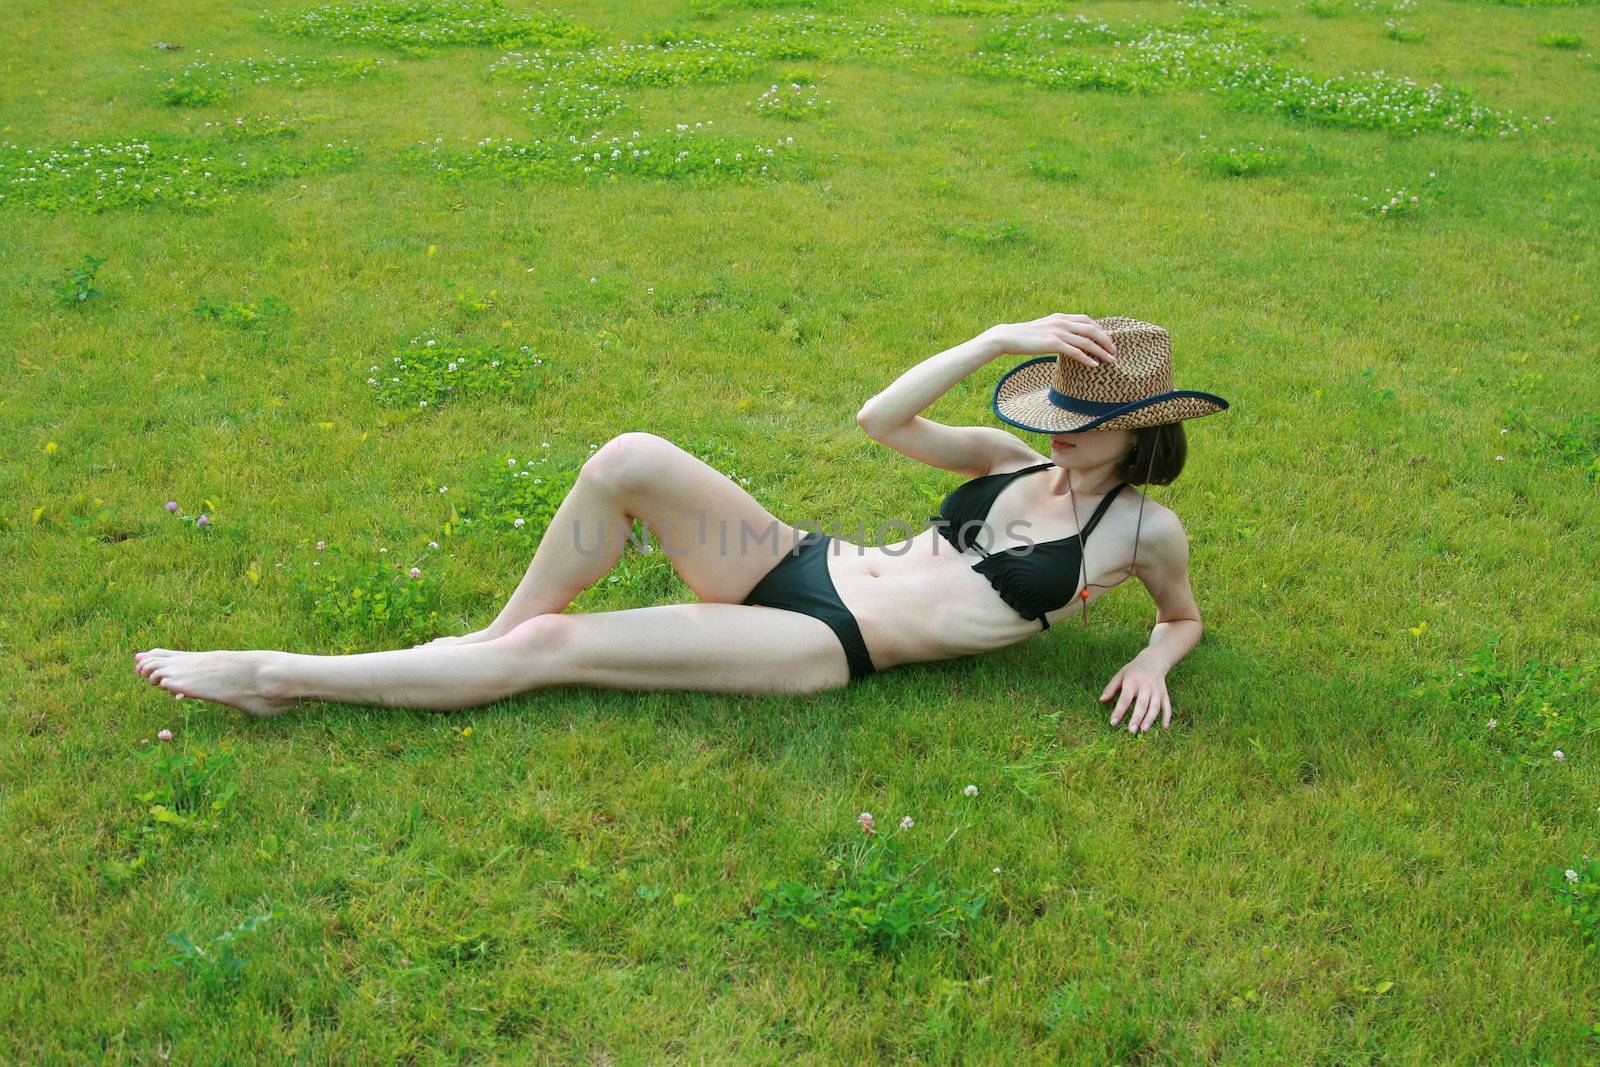 The girl in bikini sunbathes on a green lawn